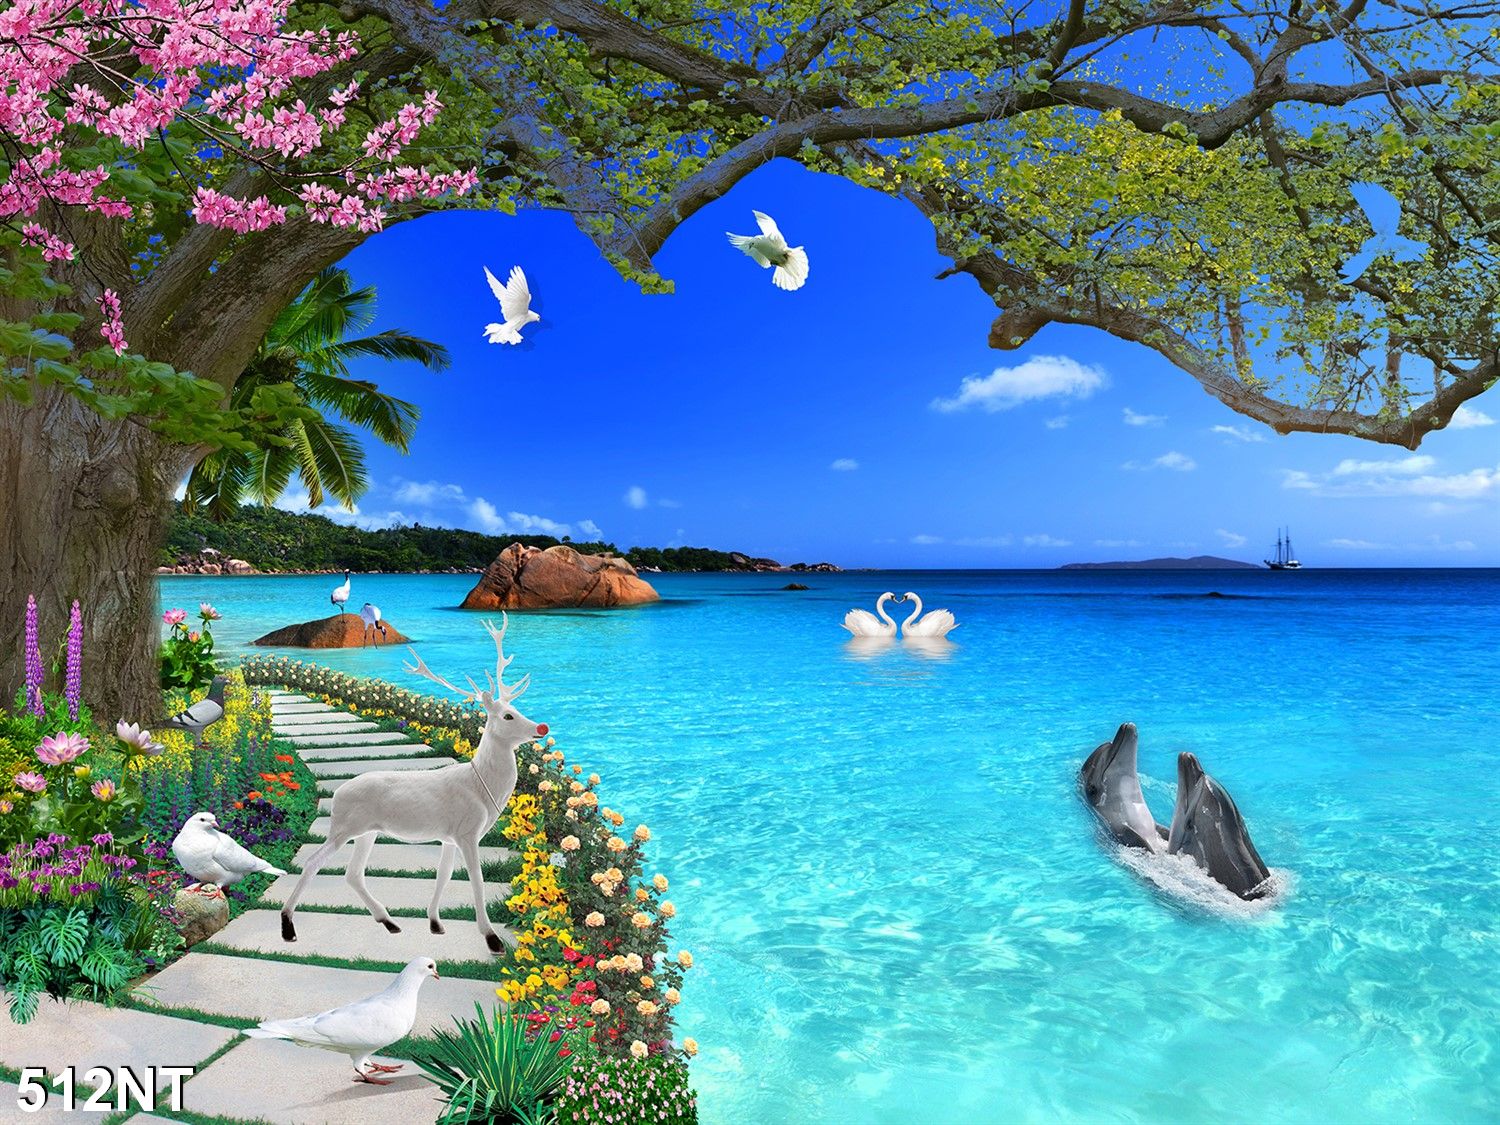 Tranh dán tường 3D phong cảnh biển đẹp 512NT sẽ làm say mê mọi người với không gian 3D hoàn toàn mới lạ. Thật tuyệt vời khi có thể ngắm nhìn những bức tranh cảnh biển sống động như thật. Những đàn chim bay trên mặt nước, những ngôi nhà ven bờ và những bãi cát trắng rực sẽ đưa bạn đến với thế giới của những giấc mơ.